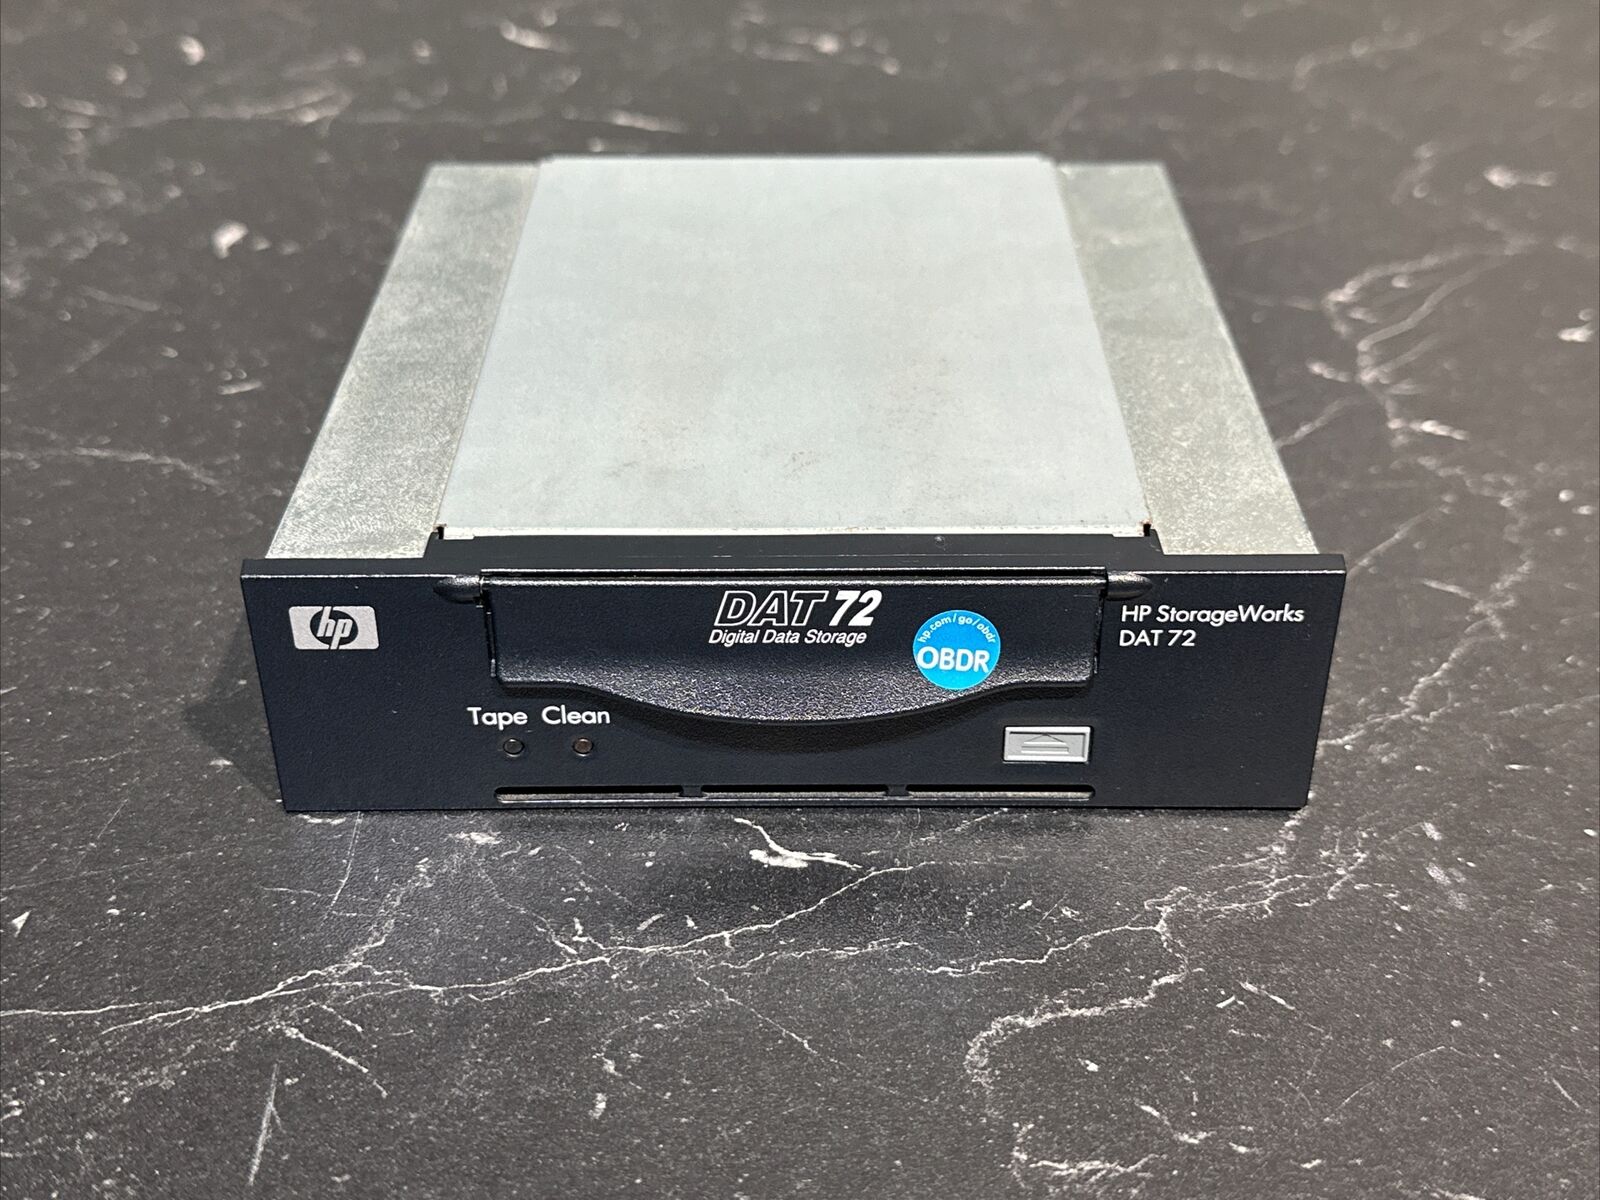 HP Q1522A StorageWorks DAT 72 Internal Tape Drive